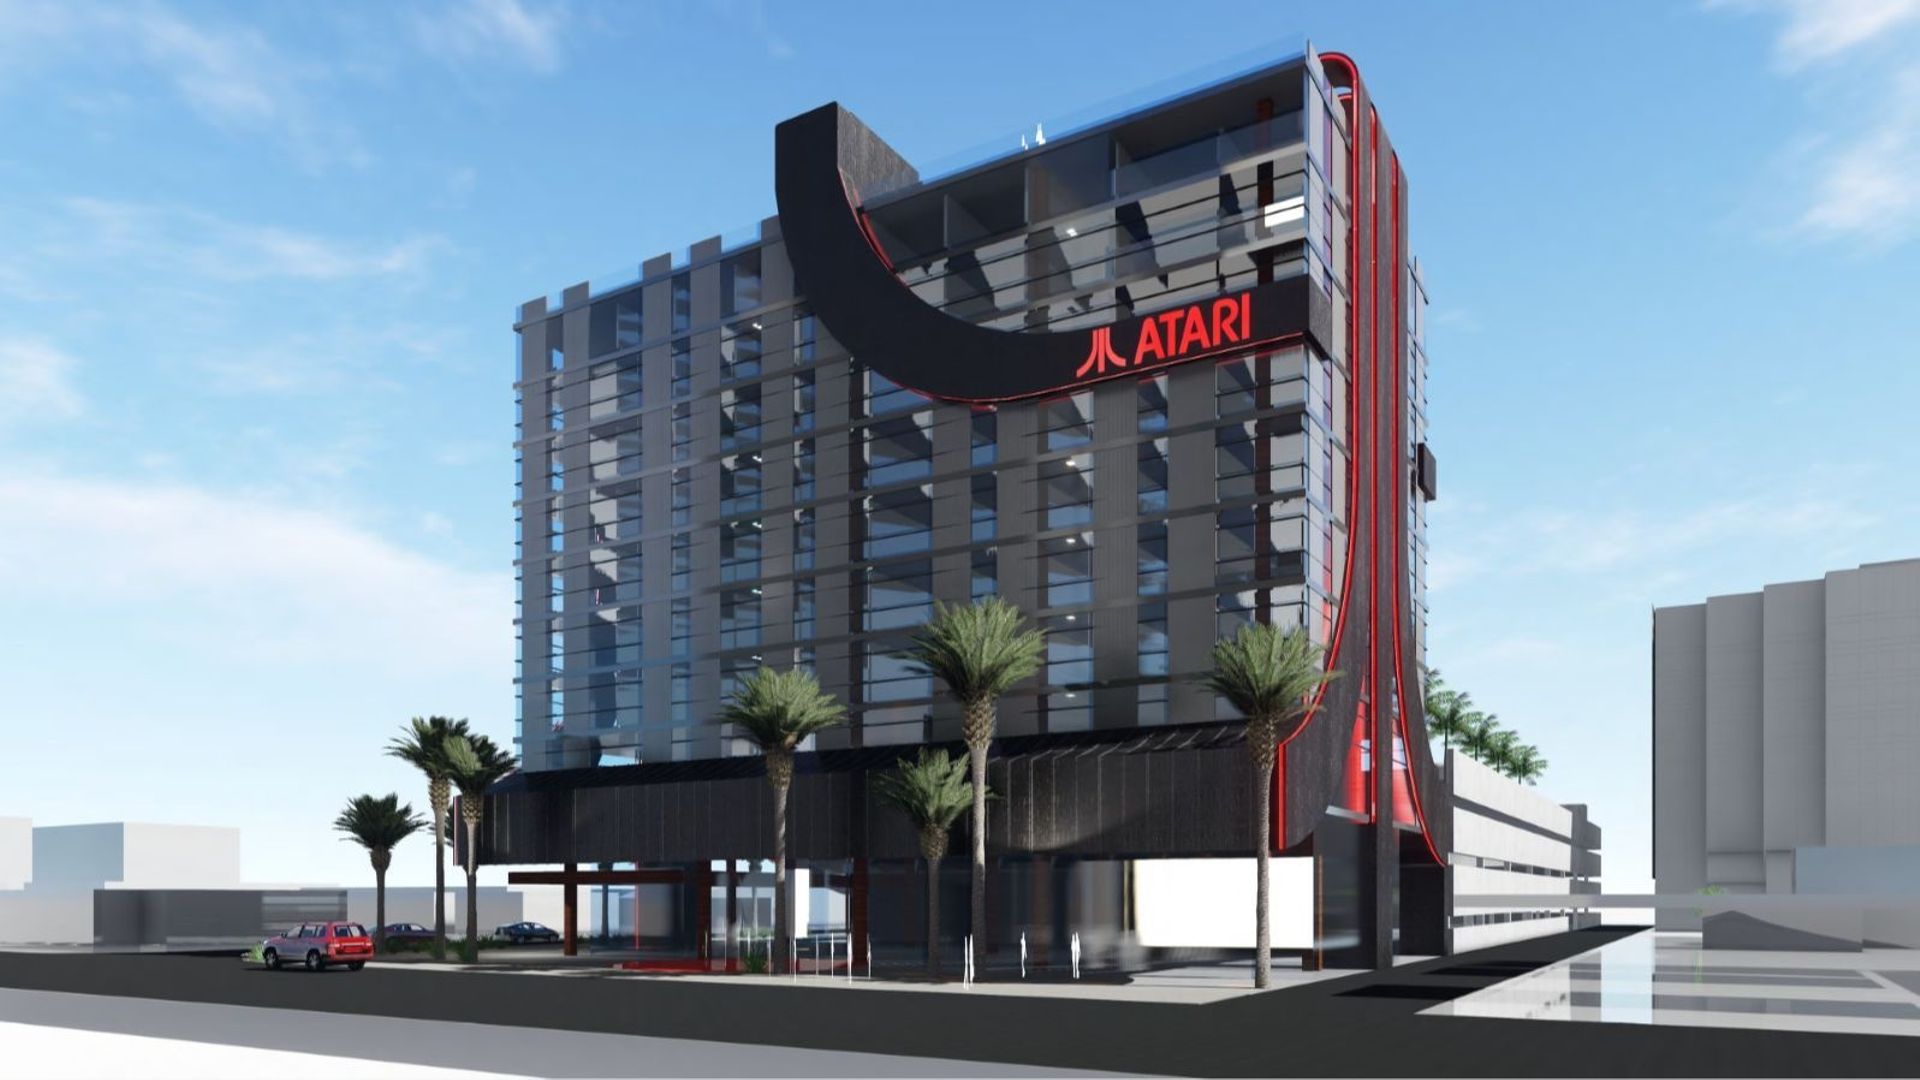 Une idée des futurs hôtels Atari aux Etats-Unis.